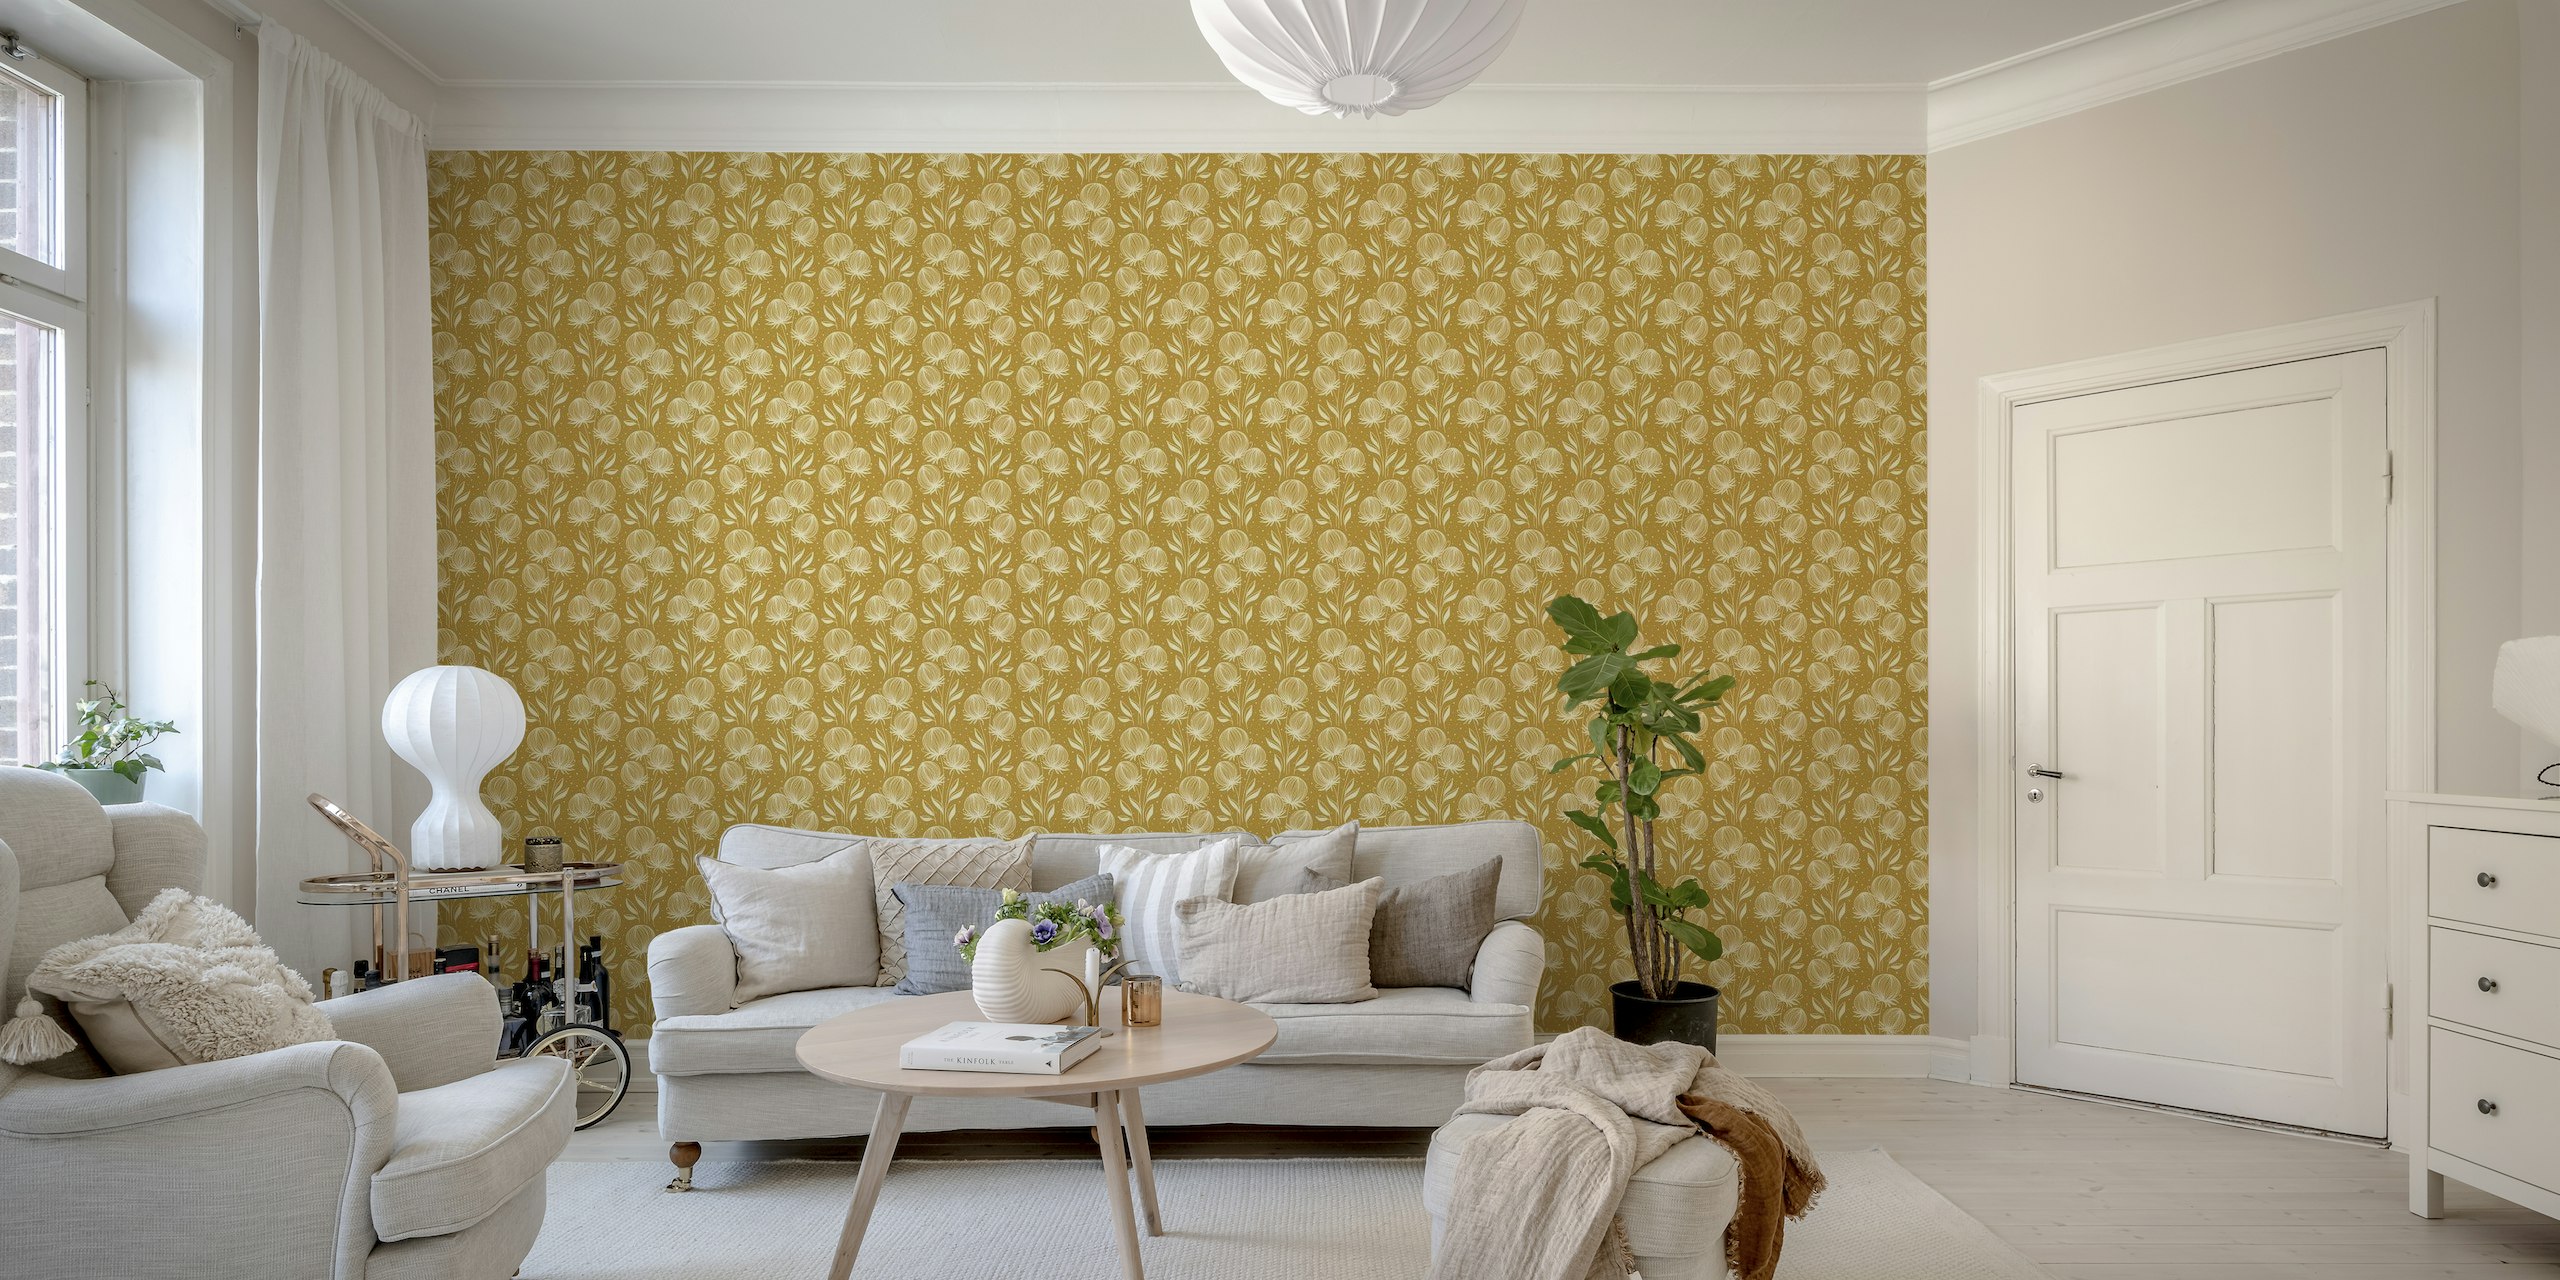 2374 - wildflowers, golden wallpaper